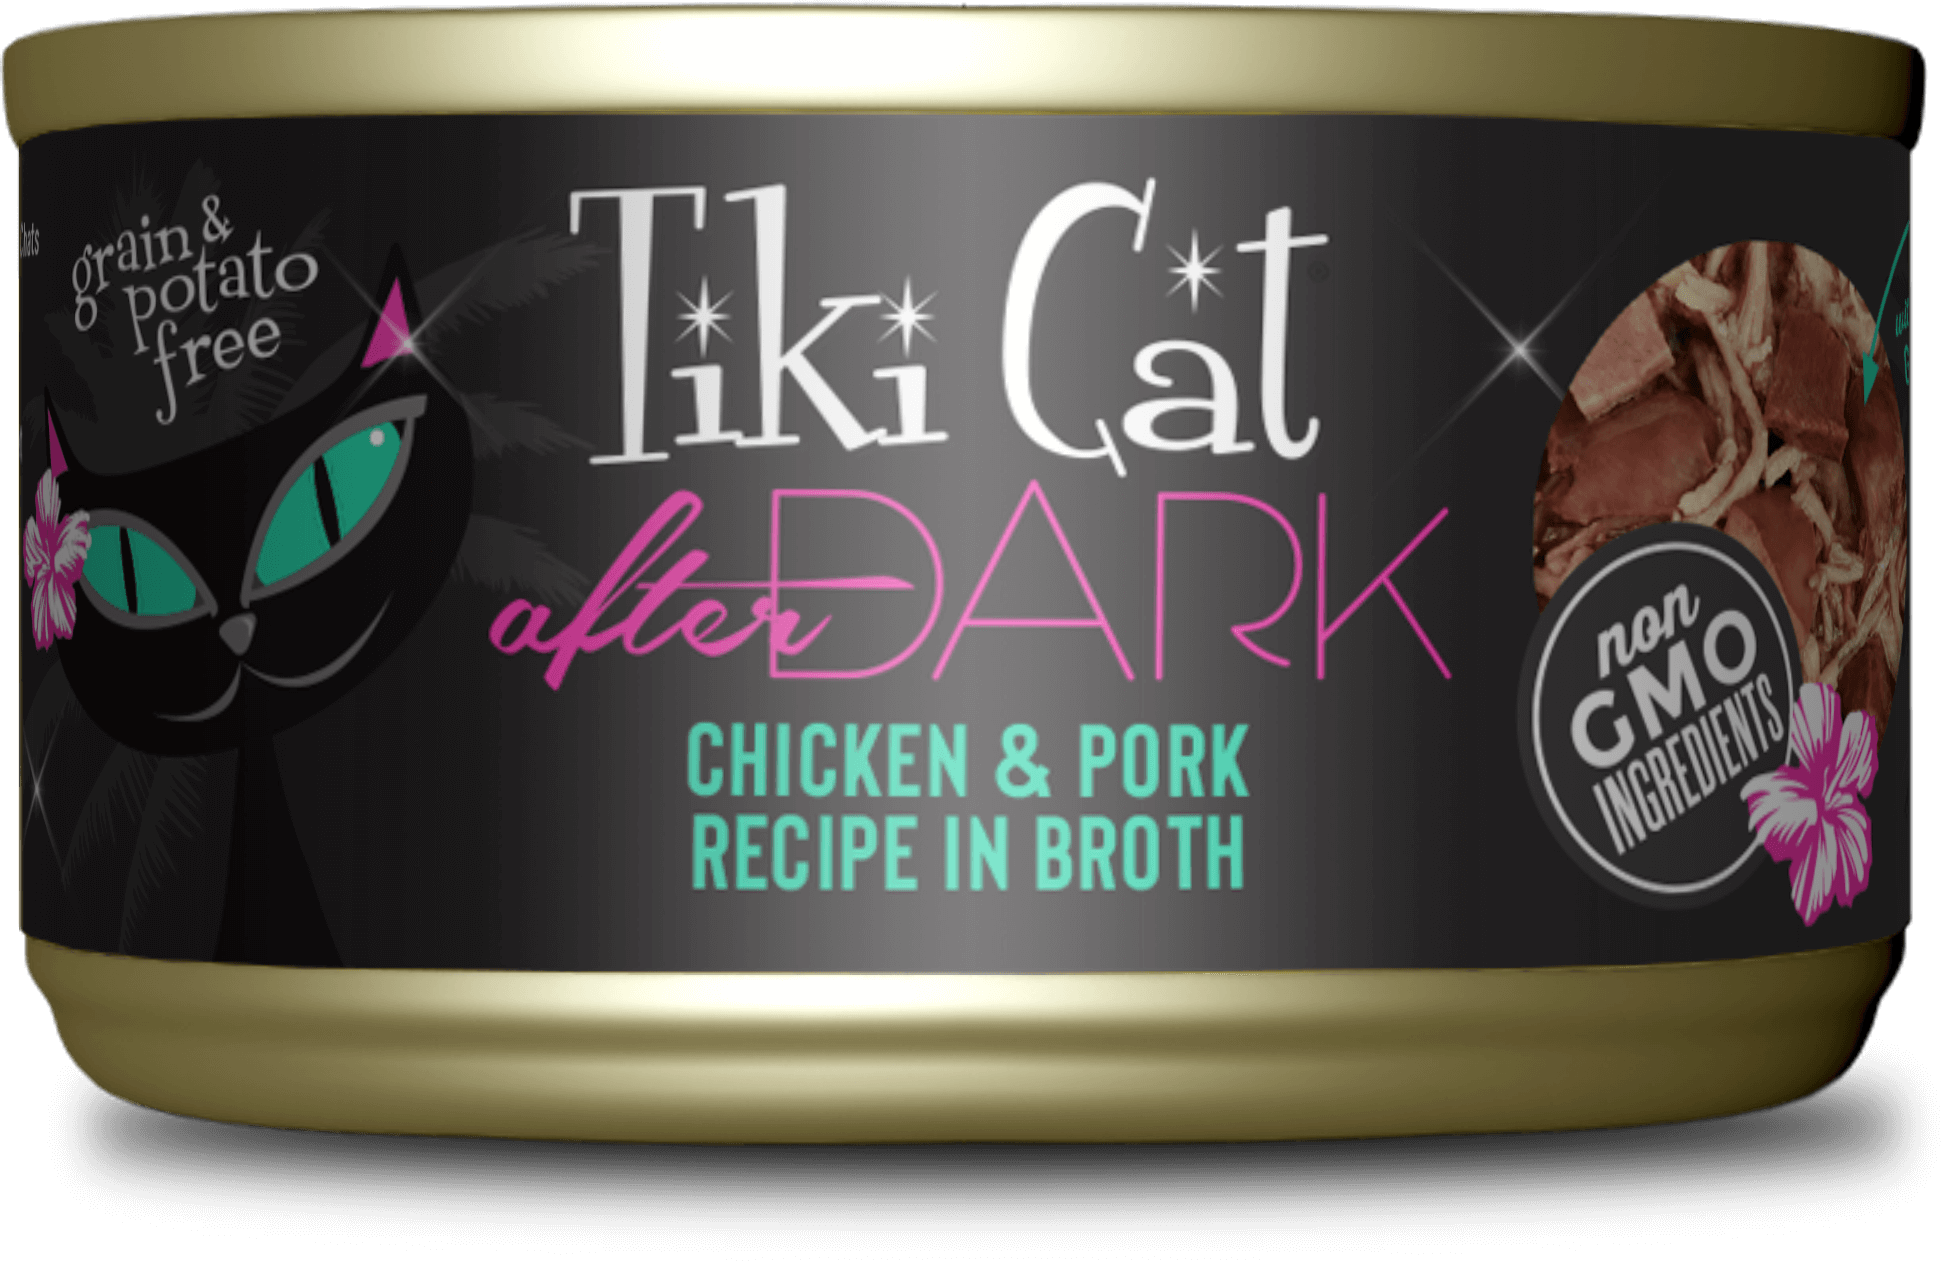 Tiki Cat After Dark Chicken & Pork Recipe In Broth